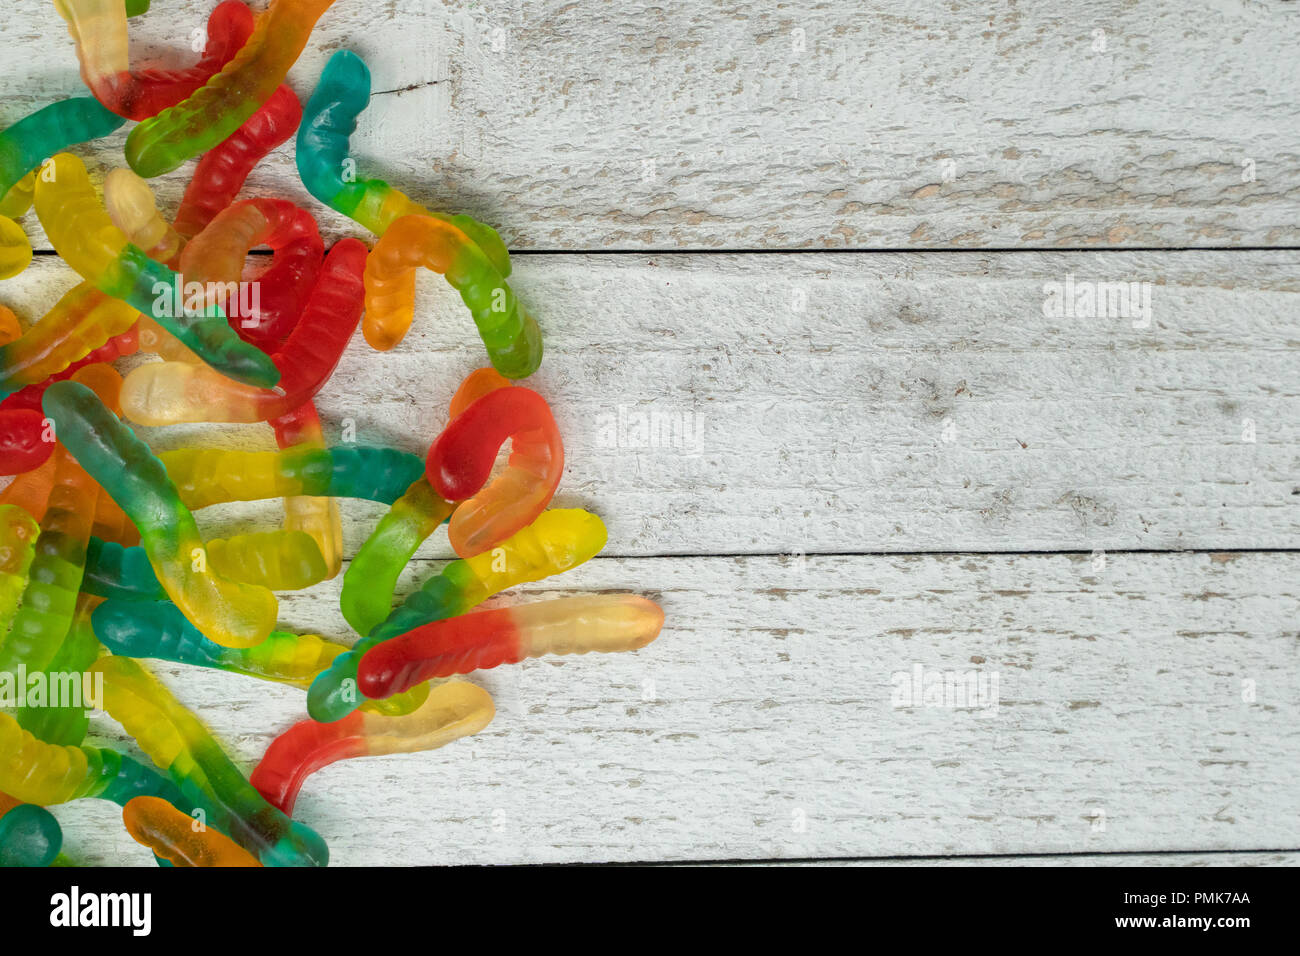 Stapel bunter Gummibärchen Worms auf einem hölzernen Hintergrund Stockfoto